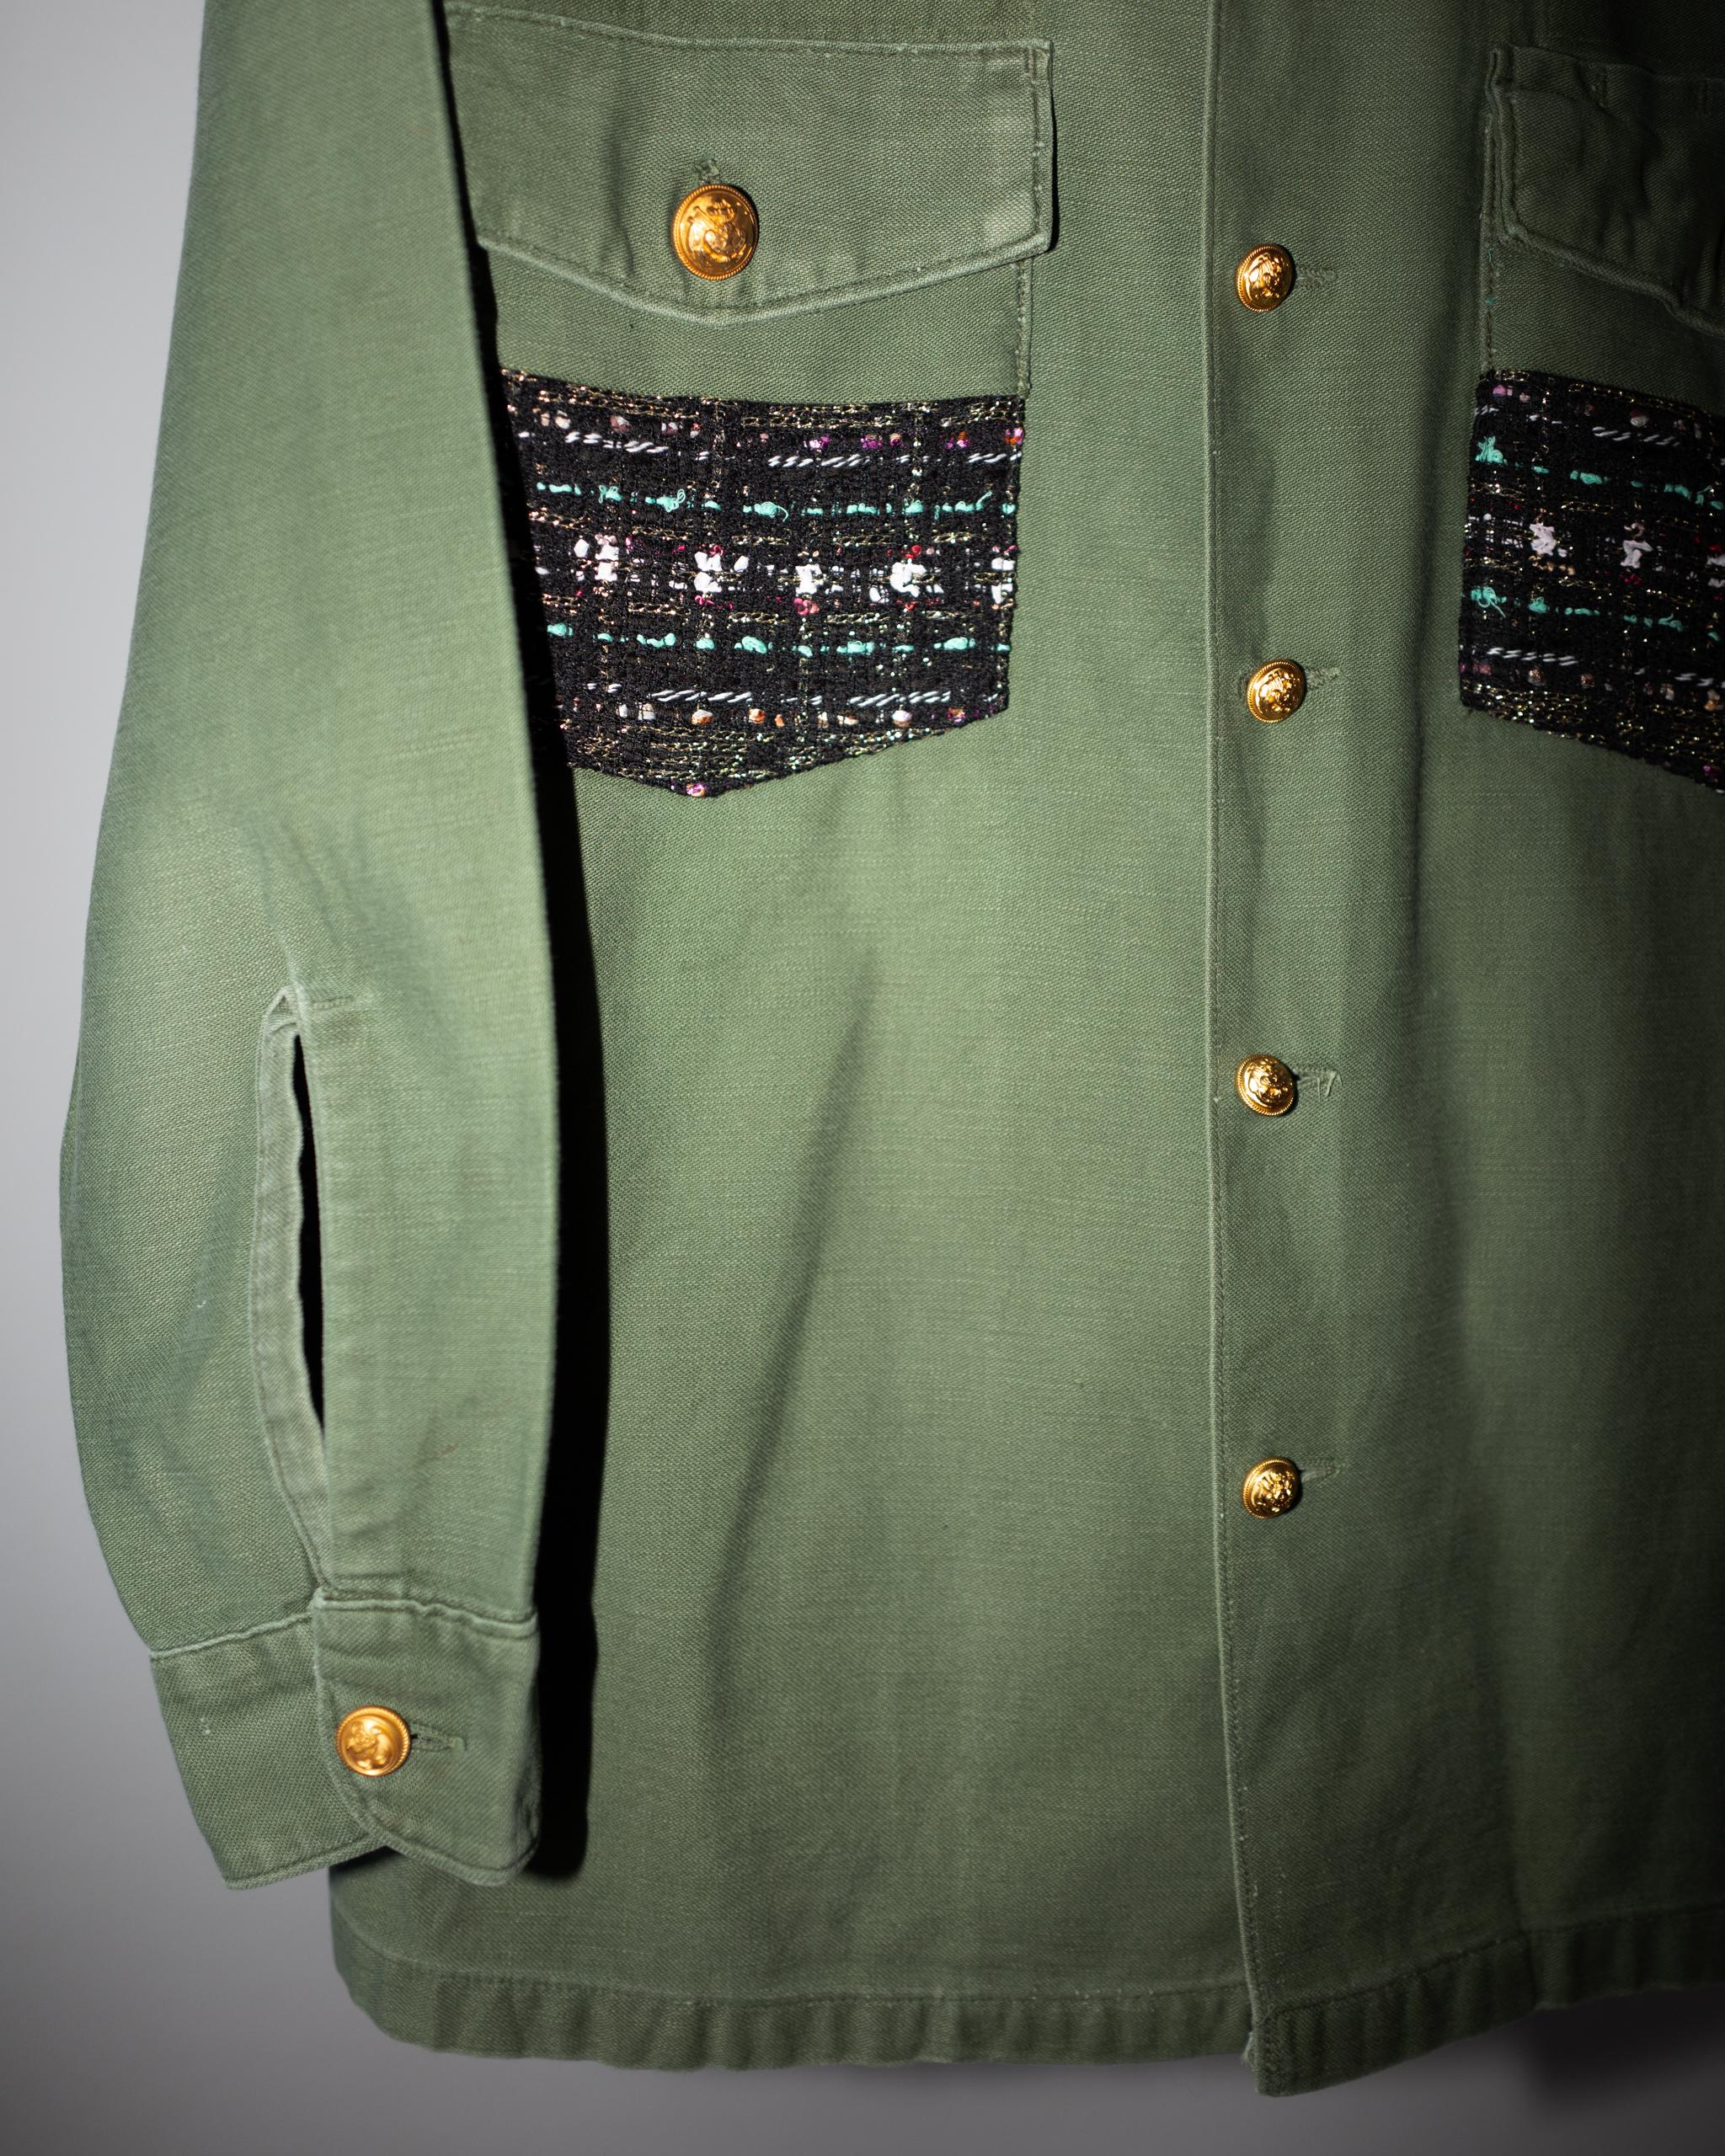 Schwarz Lurex Tweed Pastell Grün Kragen Vintage GrünMilitary Jacke Gold Knöpfe 1